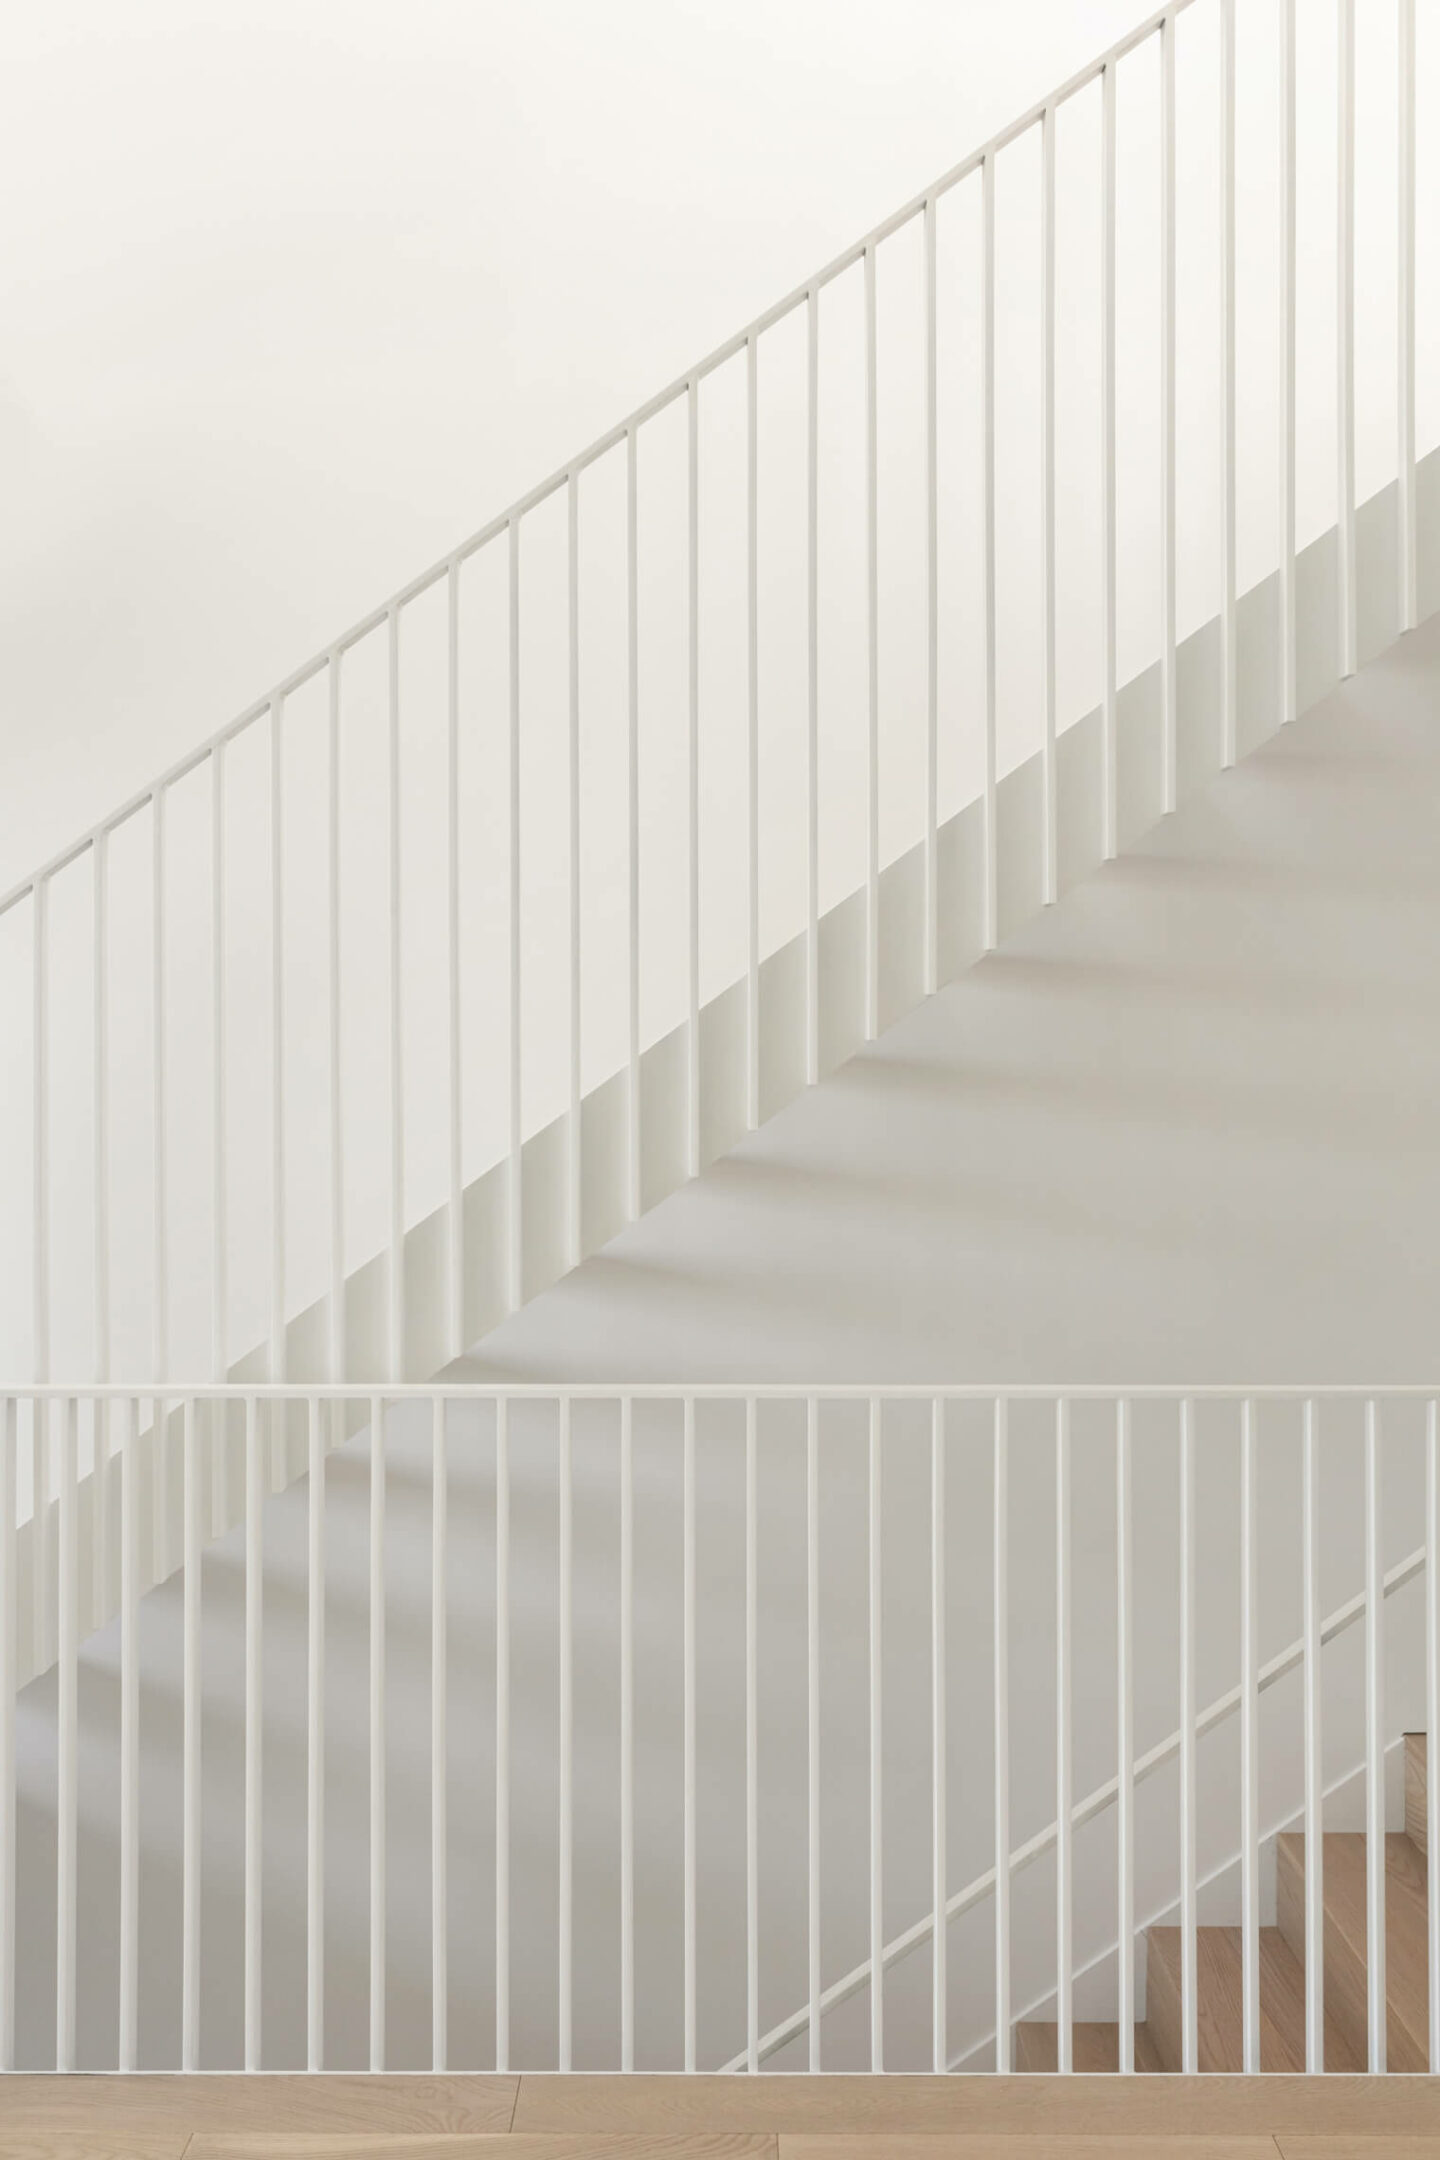 réaménagement complet plex escalier blanc scandinave minimaliste design intérieur sur mesure la shed architecture